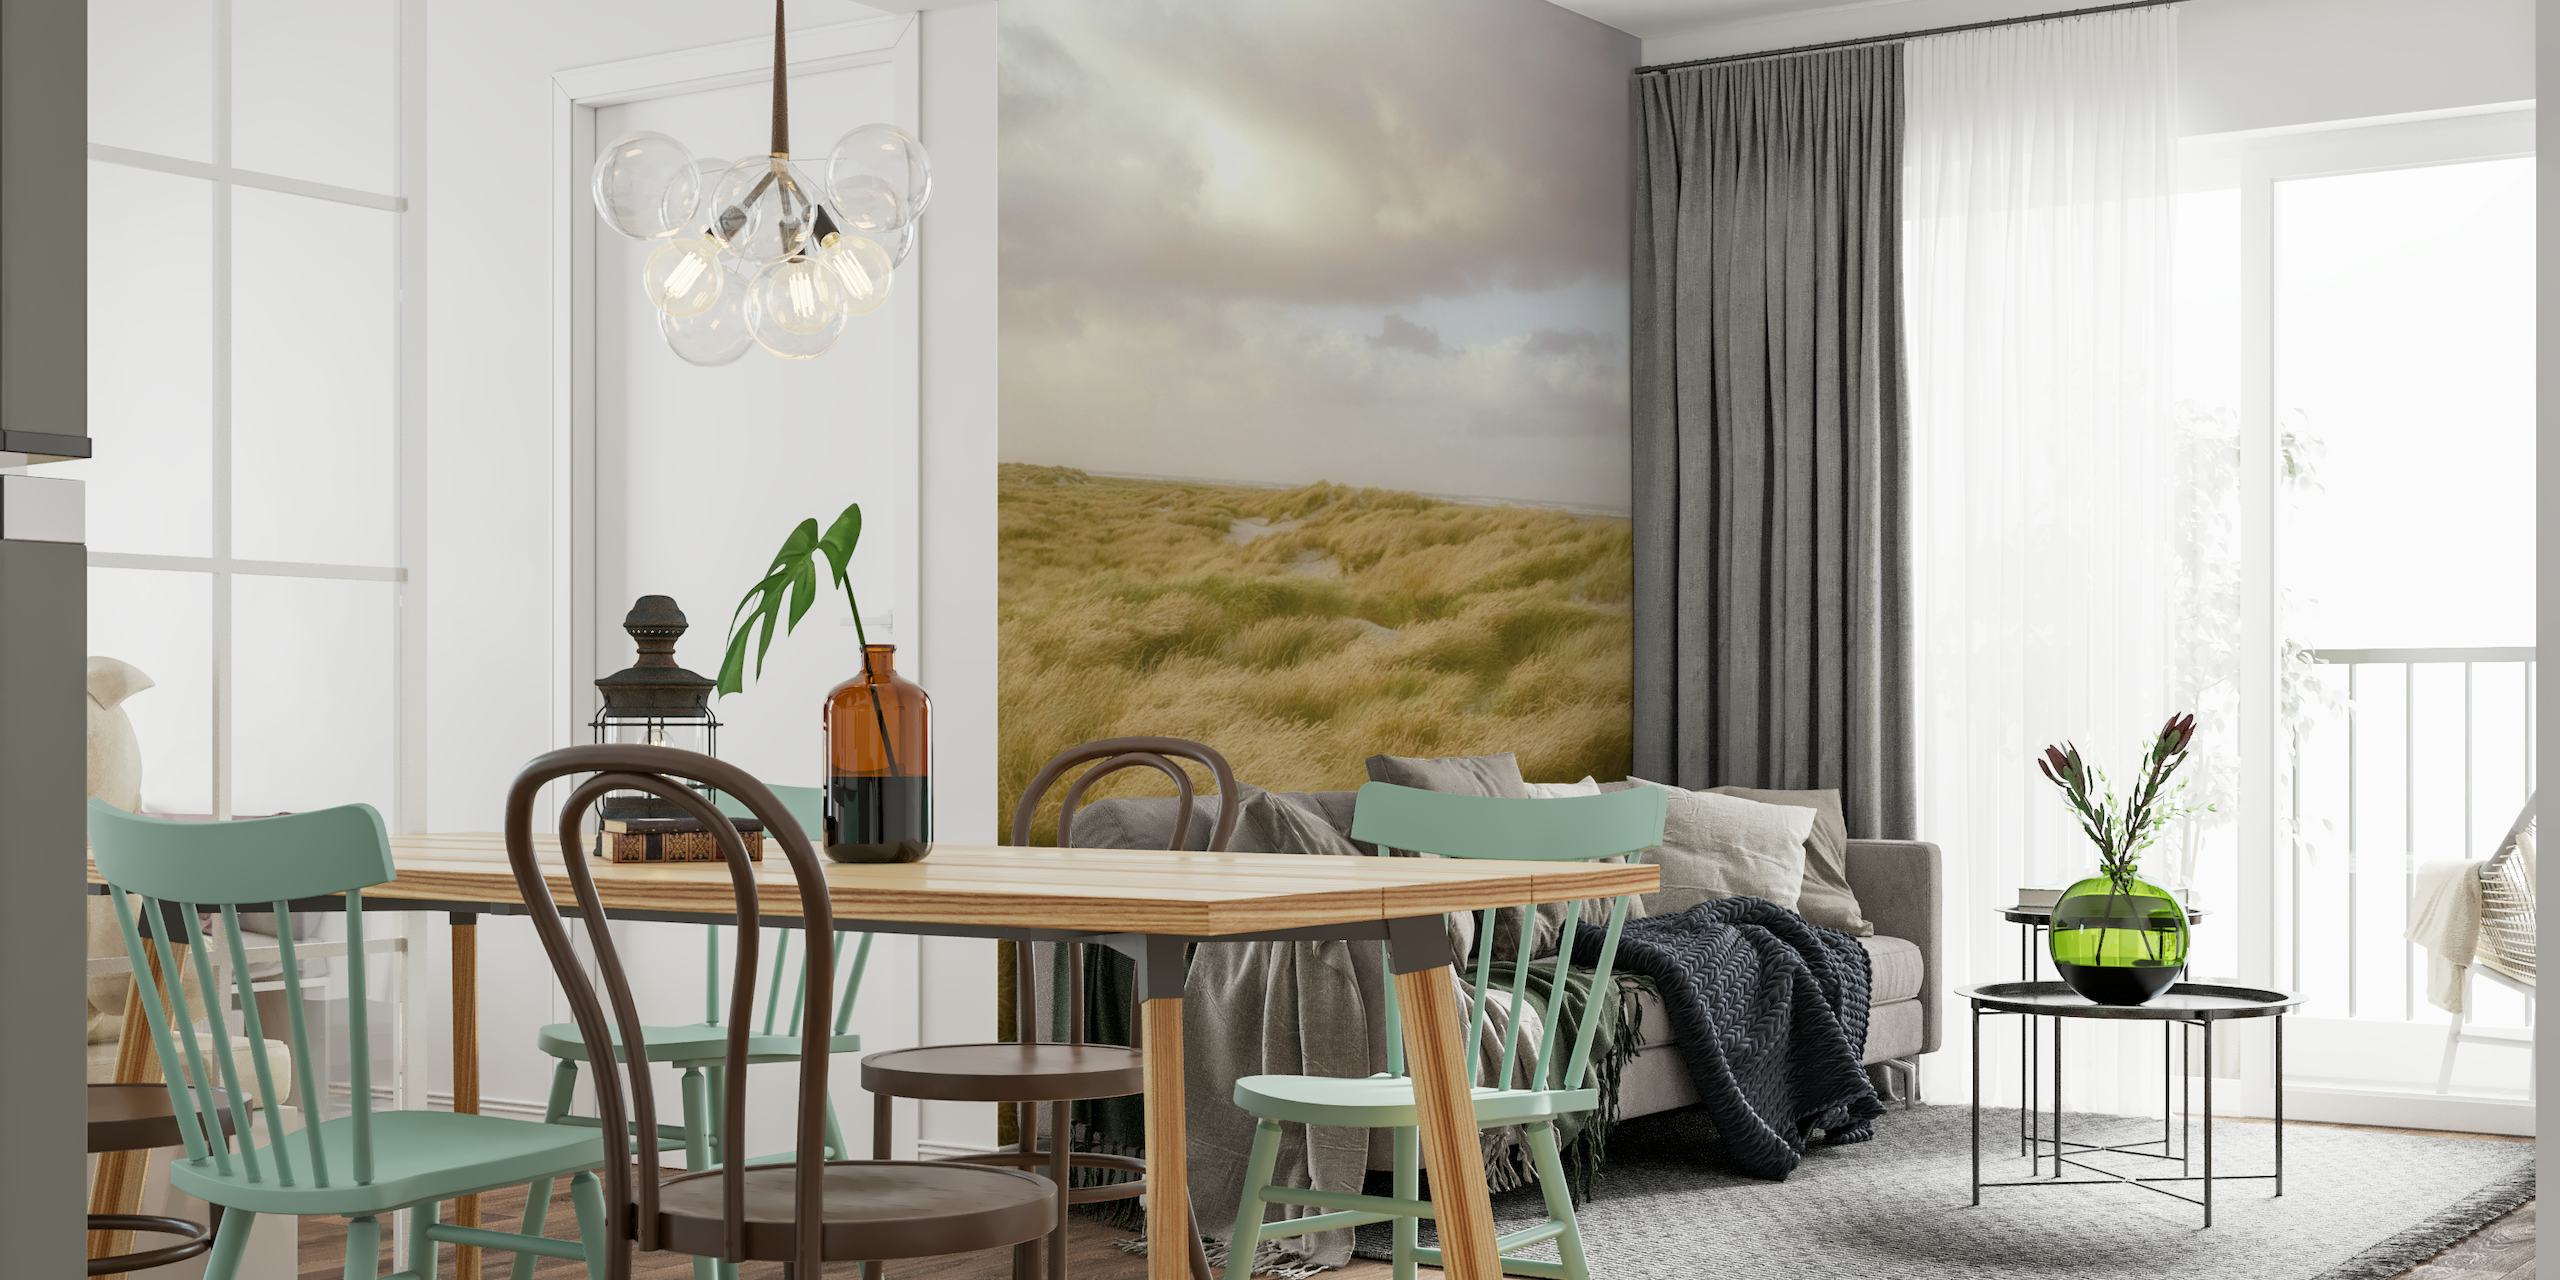 Mural que representa las serenas dunas de arena de Skagen con hierba marram ondeando bajo un cielo nublado.